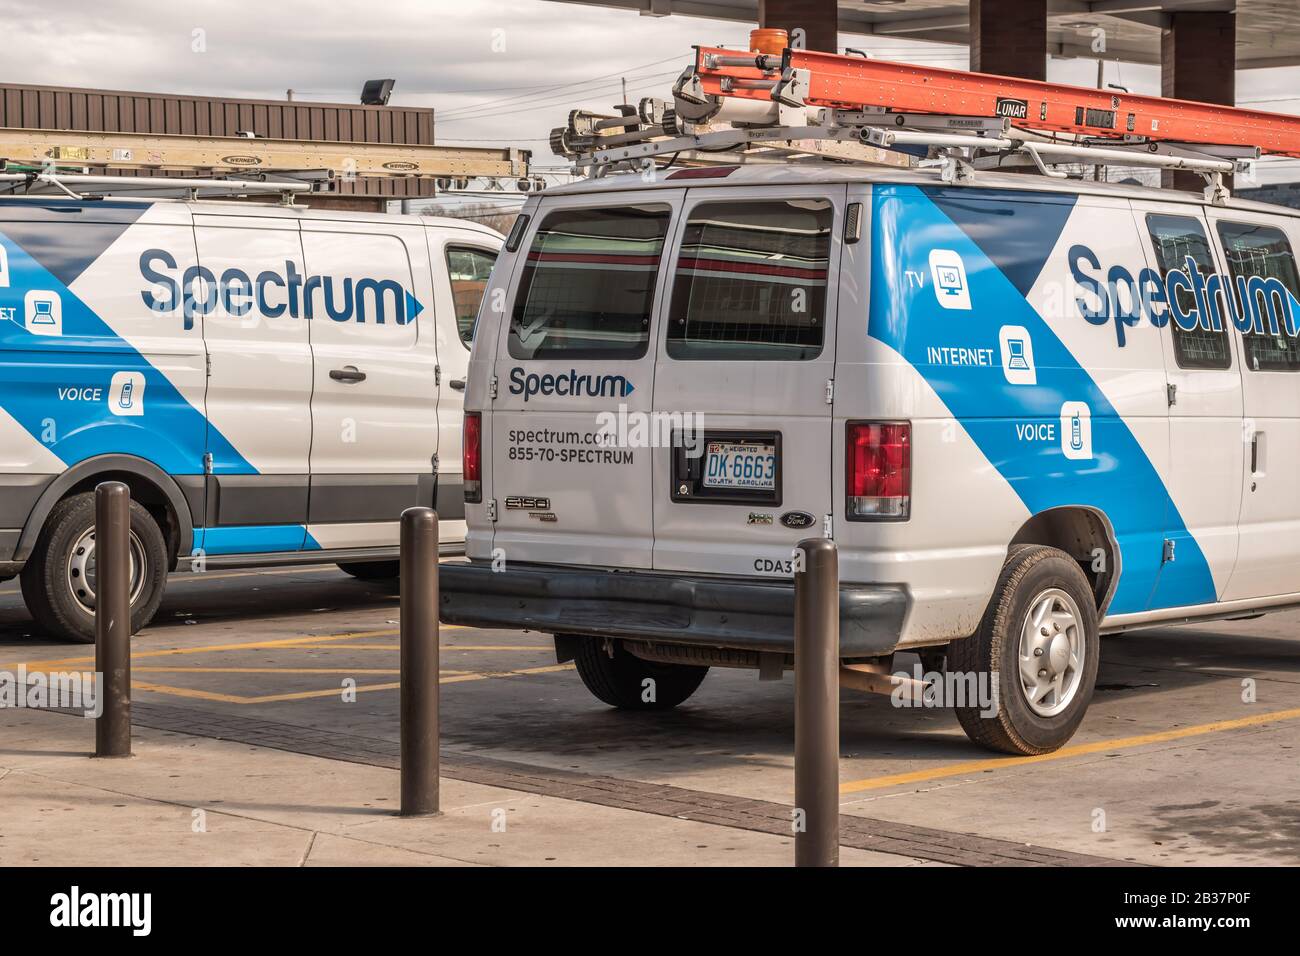 Horizontale mittlere Nahaufnahme von zwei geparkten 'Spectrum'-Transportern mit blau-weiß lackierten Markenlogos. Stockfoto